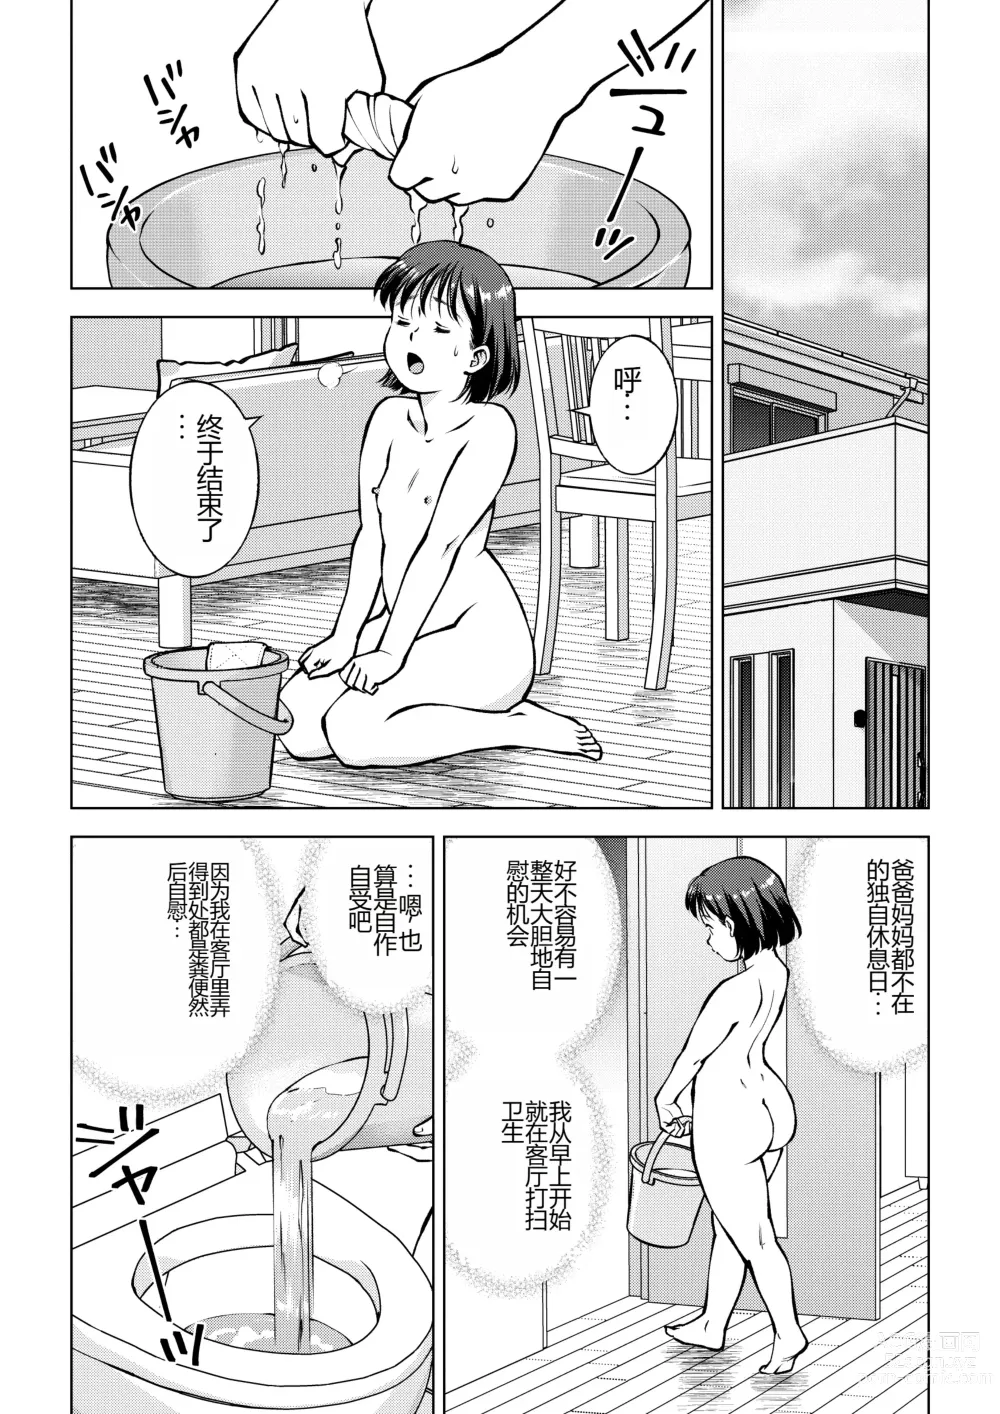 Page 2 of doujinshi Okada-san no Sanran